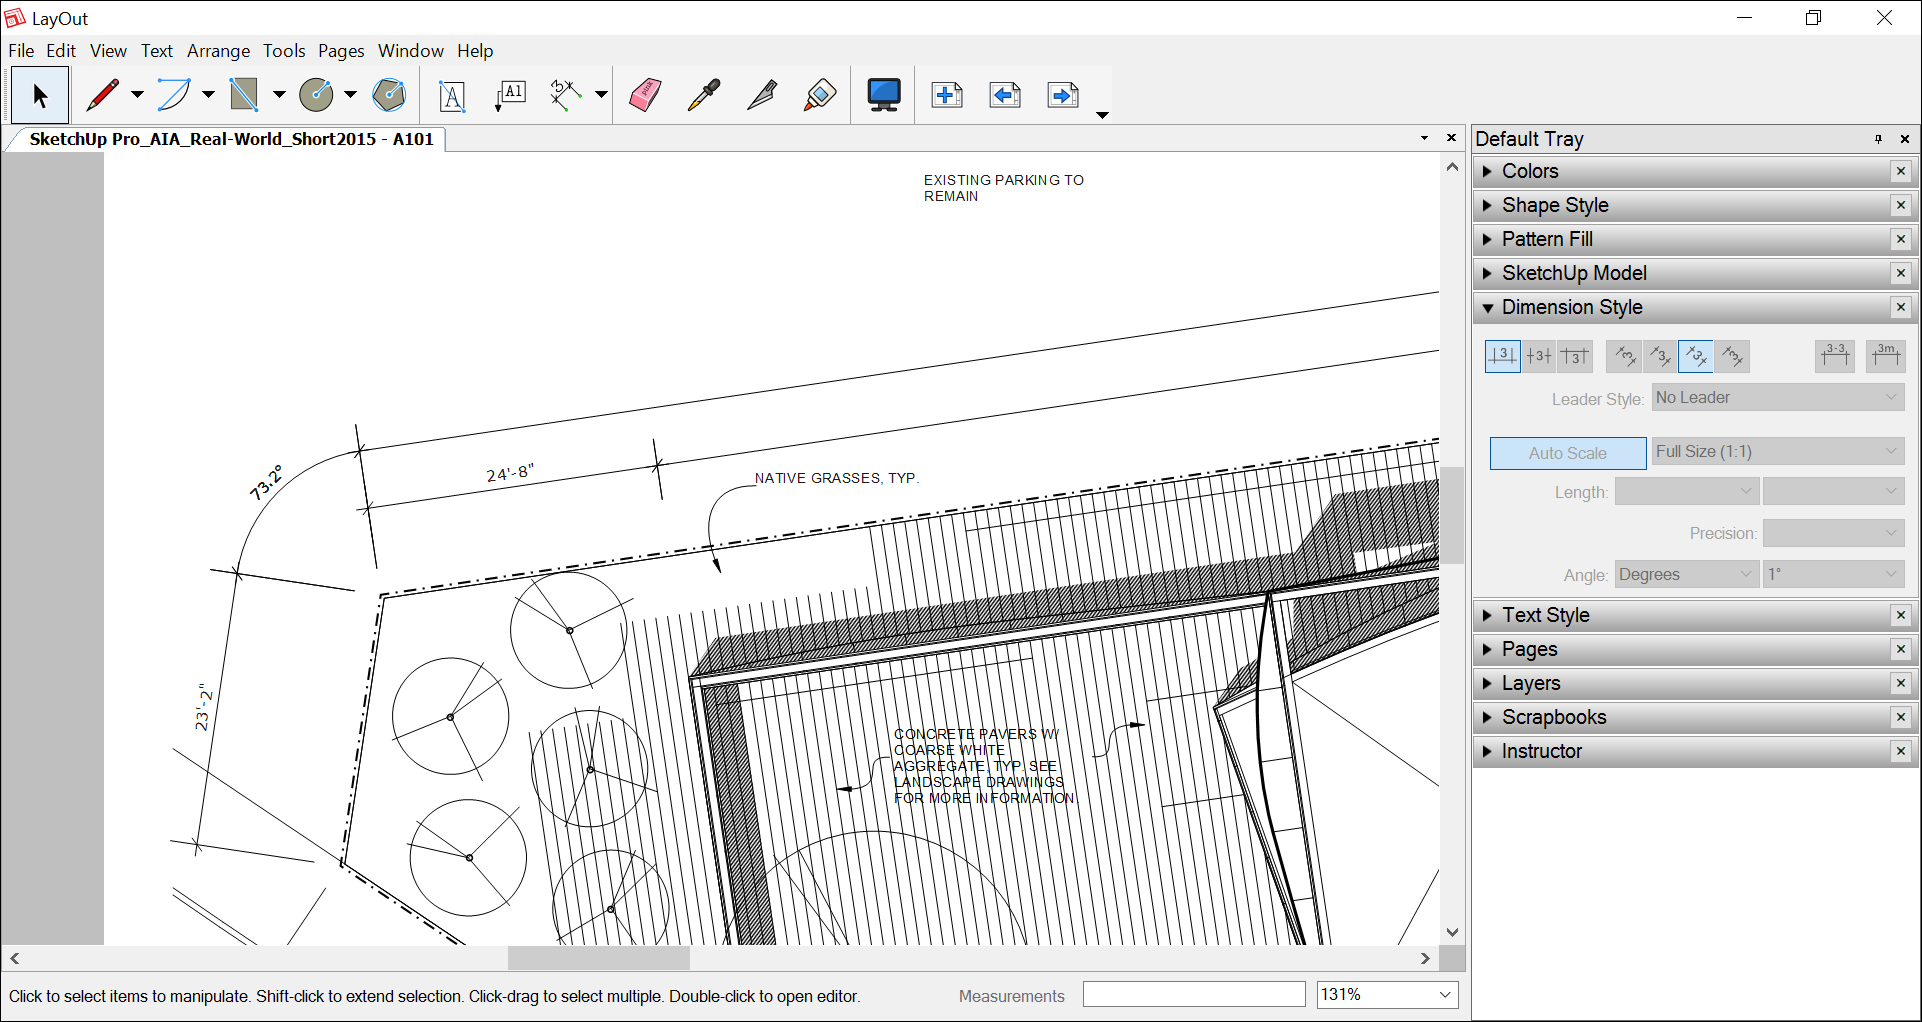 LayOut では、SketchUp のモデル エンティティのデータに基づいて、直線や角度の寸法を表示できます